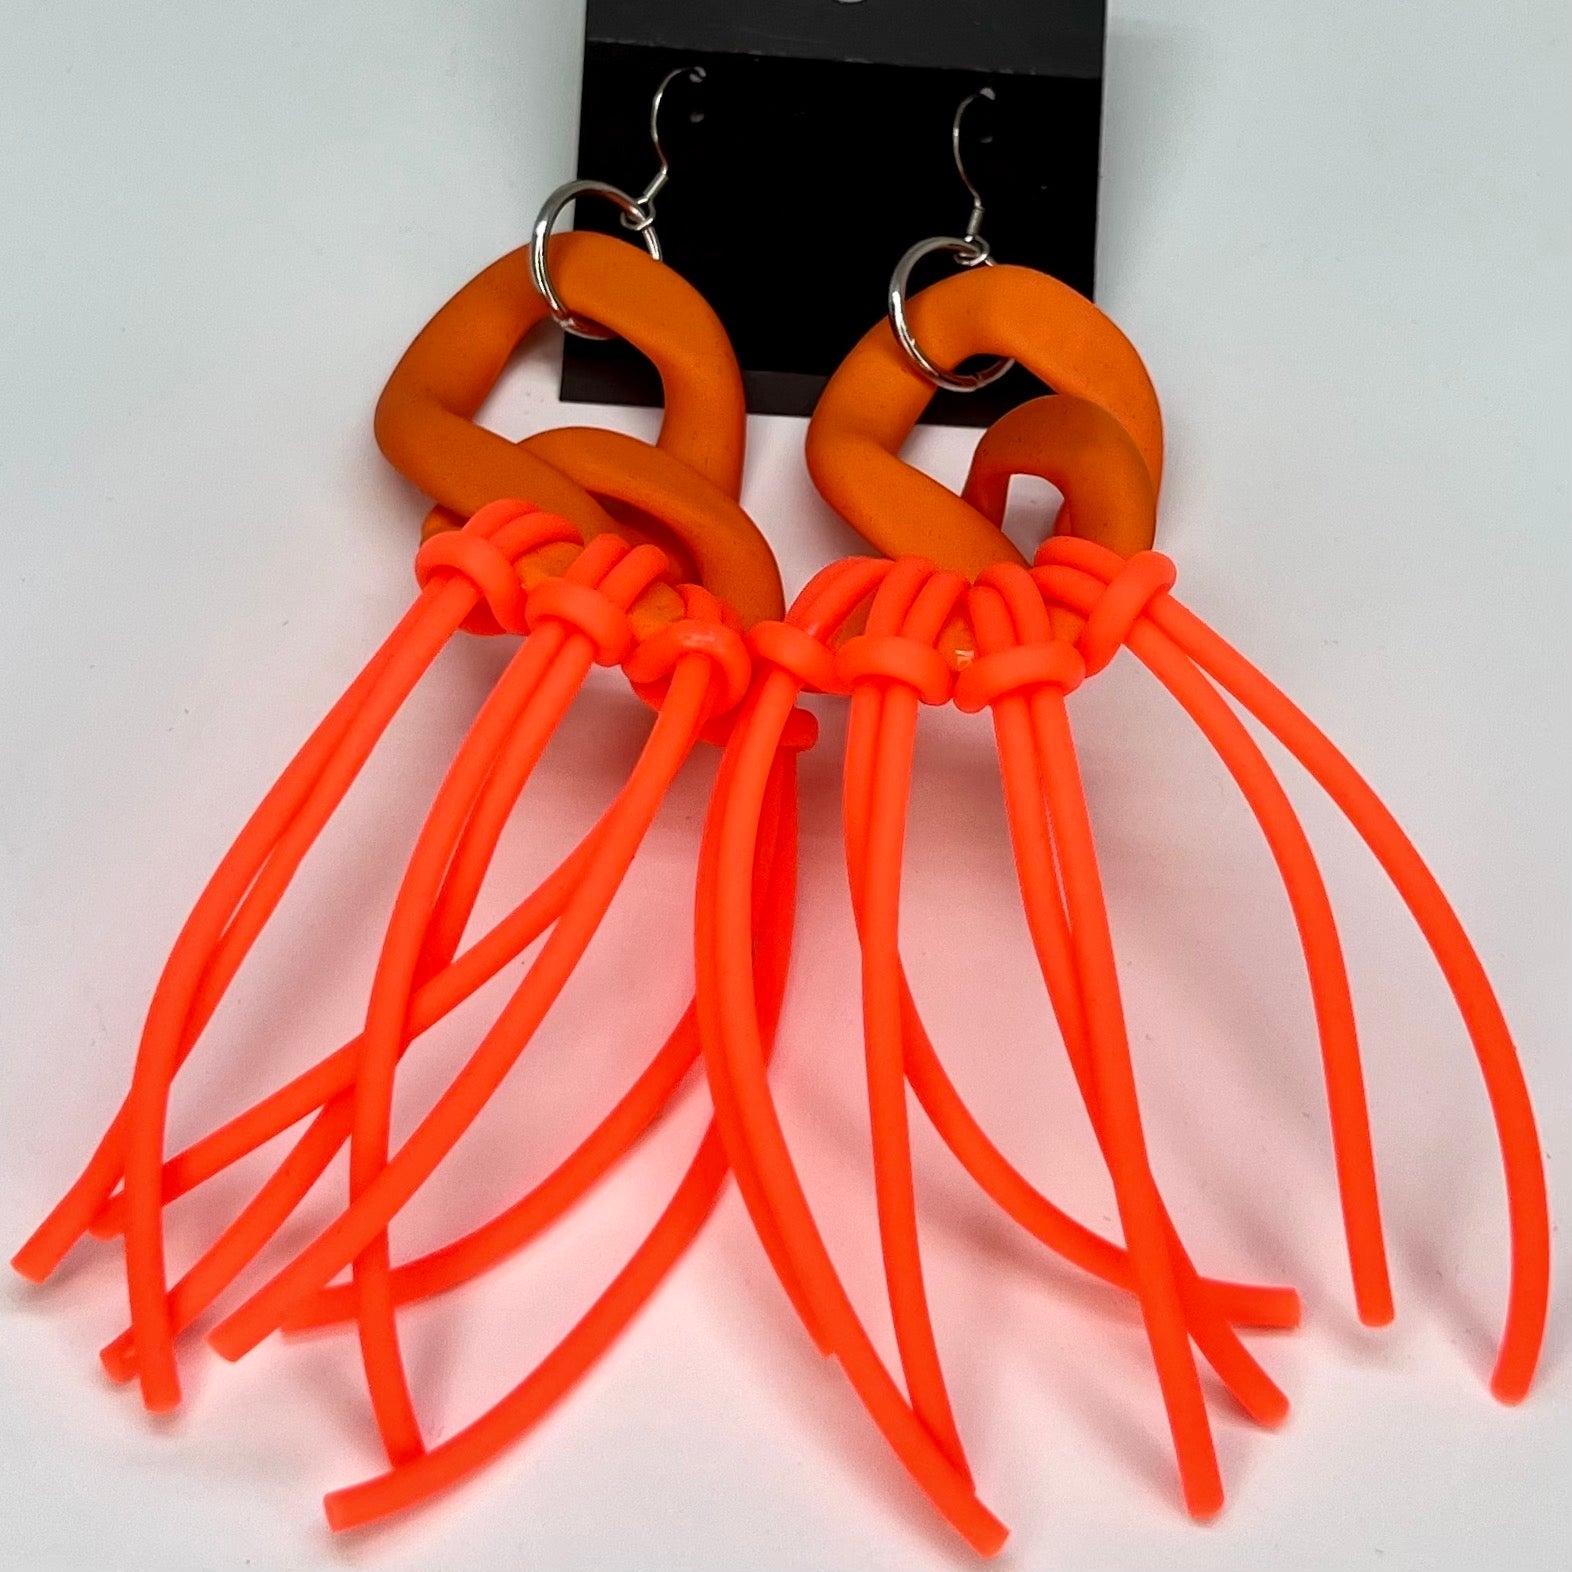 Giant Oktopus Earrings in Orange or Green